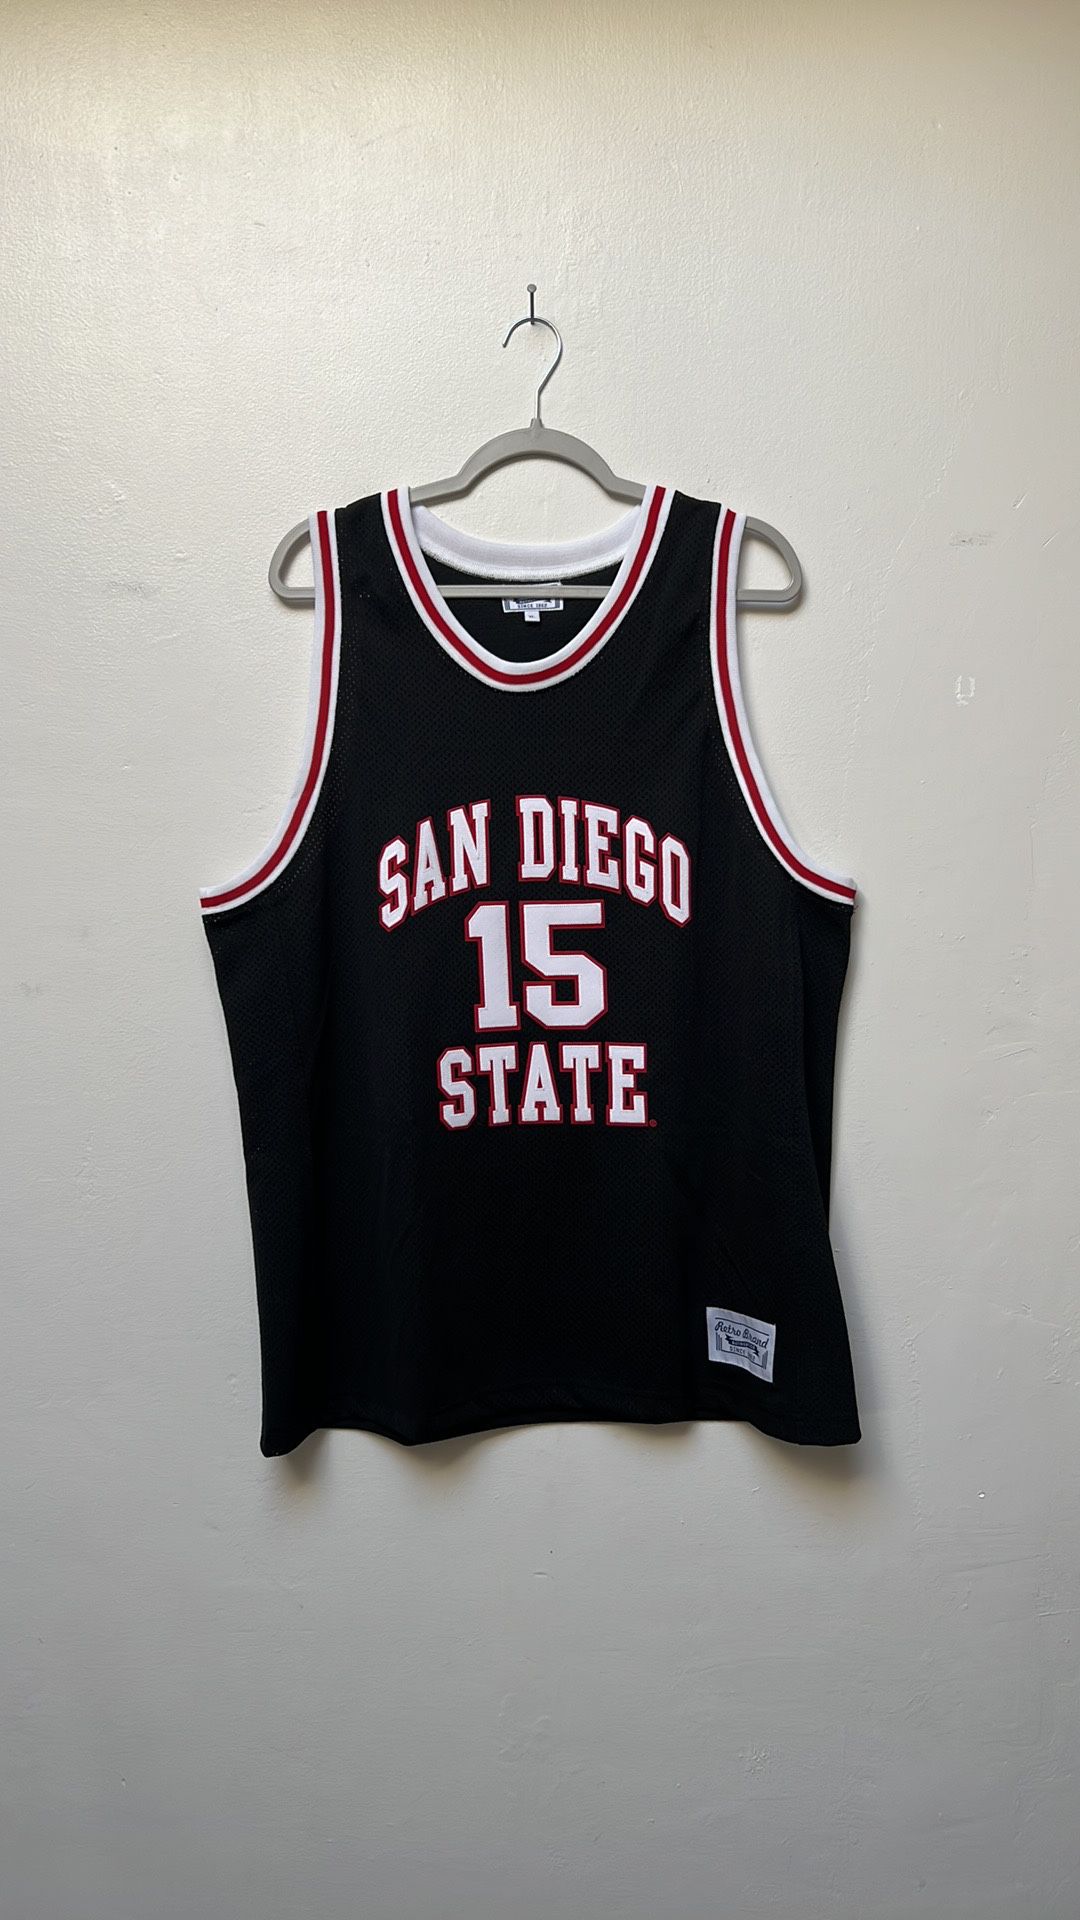 SDSU Kawhi Leonard Basketball Jersey for Sale in San Diego, CA - OfferUp